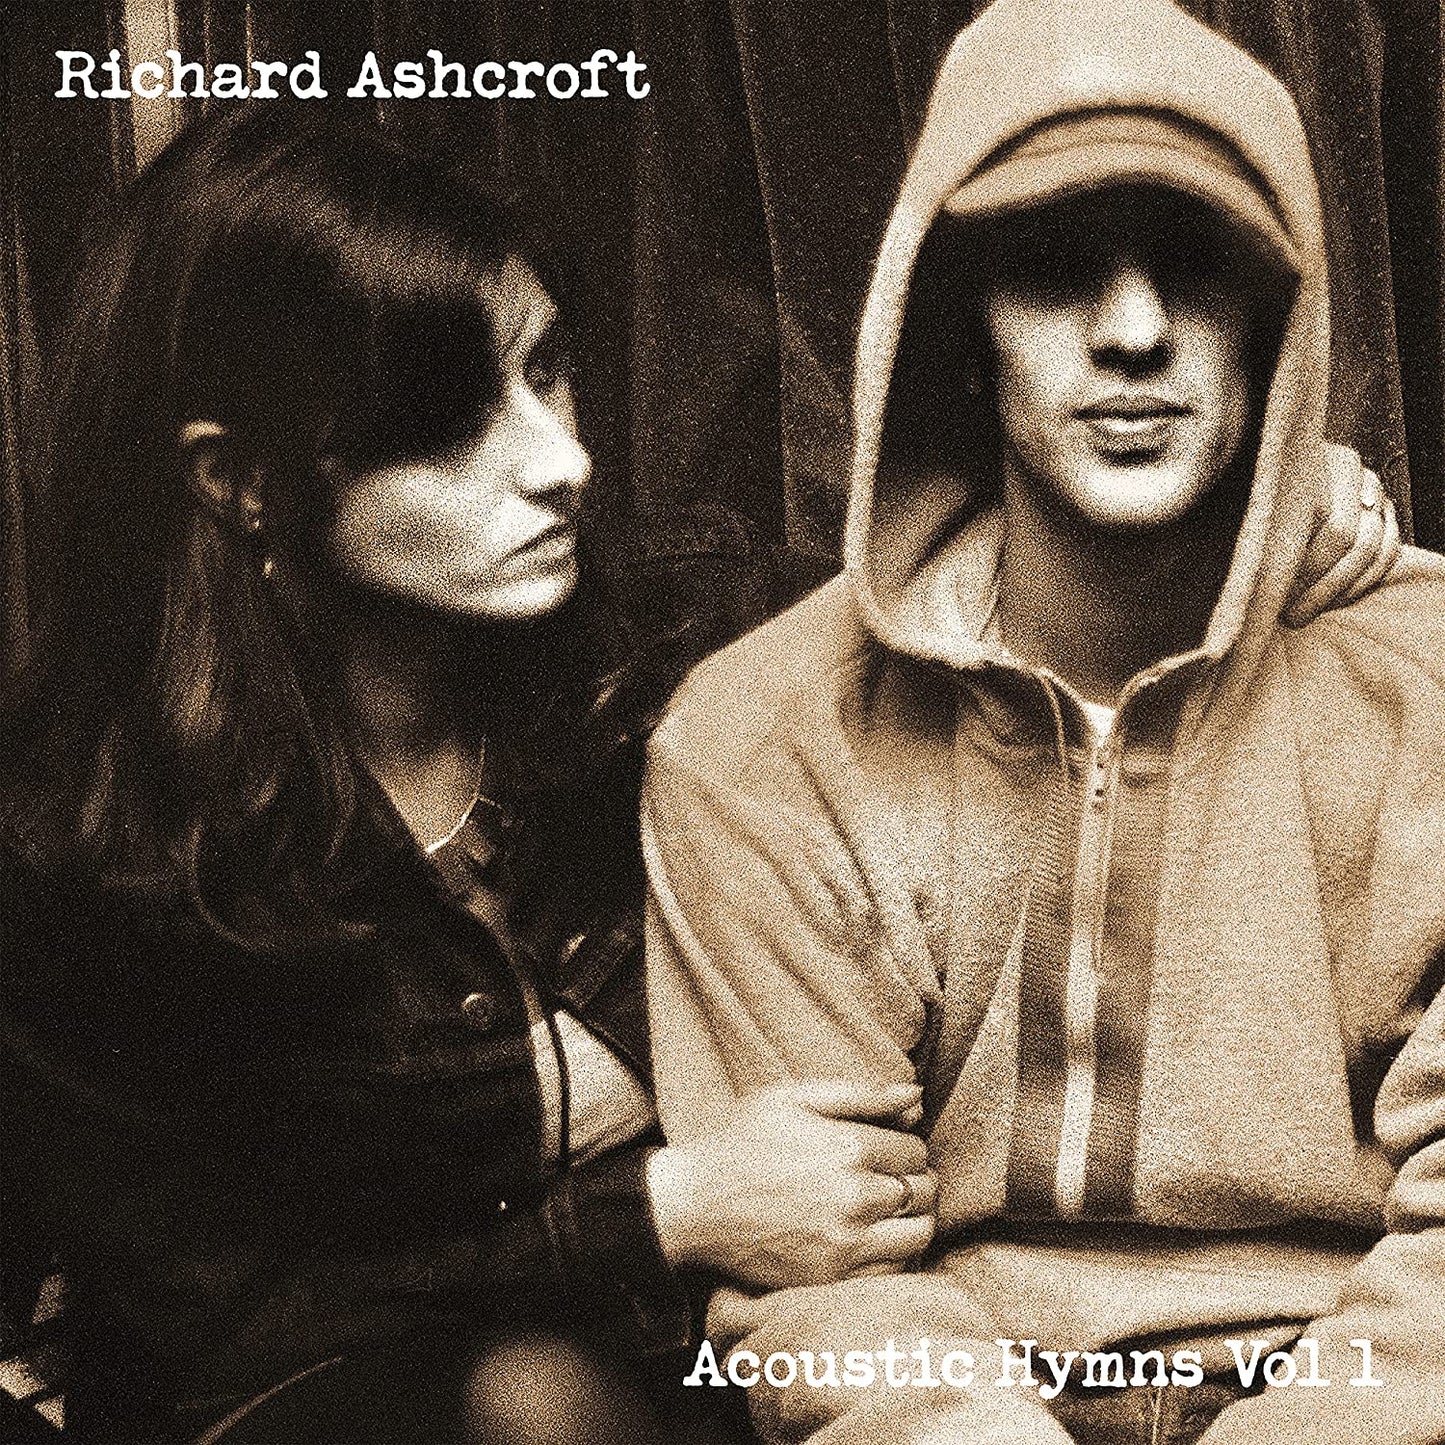 Richard Ashcroft Acoustic Hymns Vol 1 - Ireland Vinyl